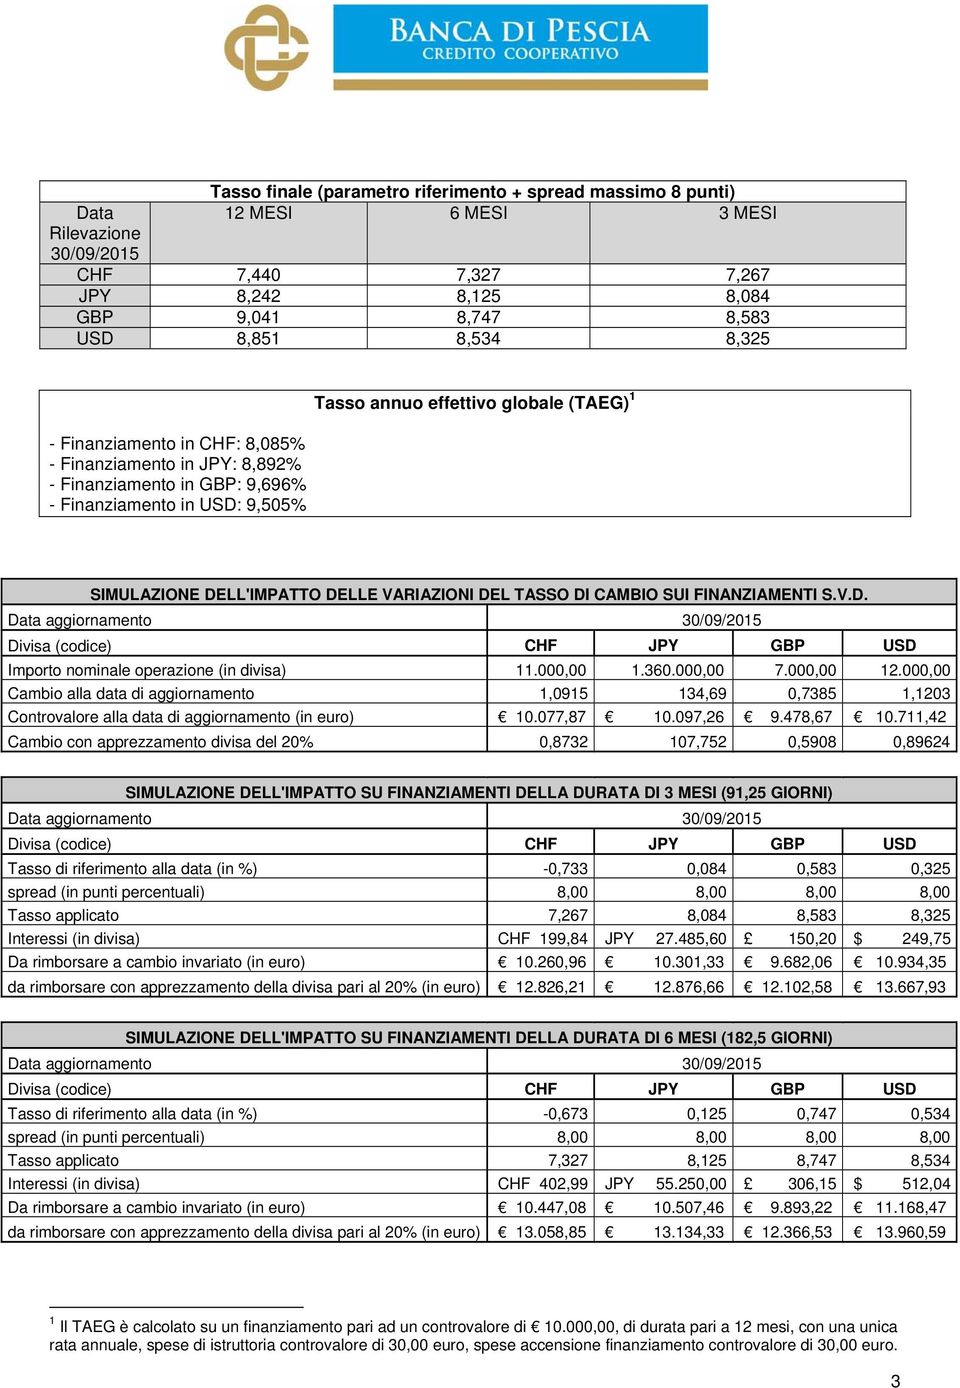 VARIAZIONI DEL TASSO DI CAMBIO SUI FINANZIAMENTI S.V.D. Importo nominale operazione (in divisa) 11.000,00 1.360.000,00 7.000,00 12.